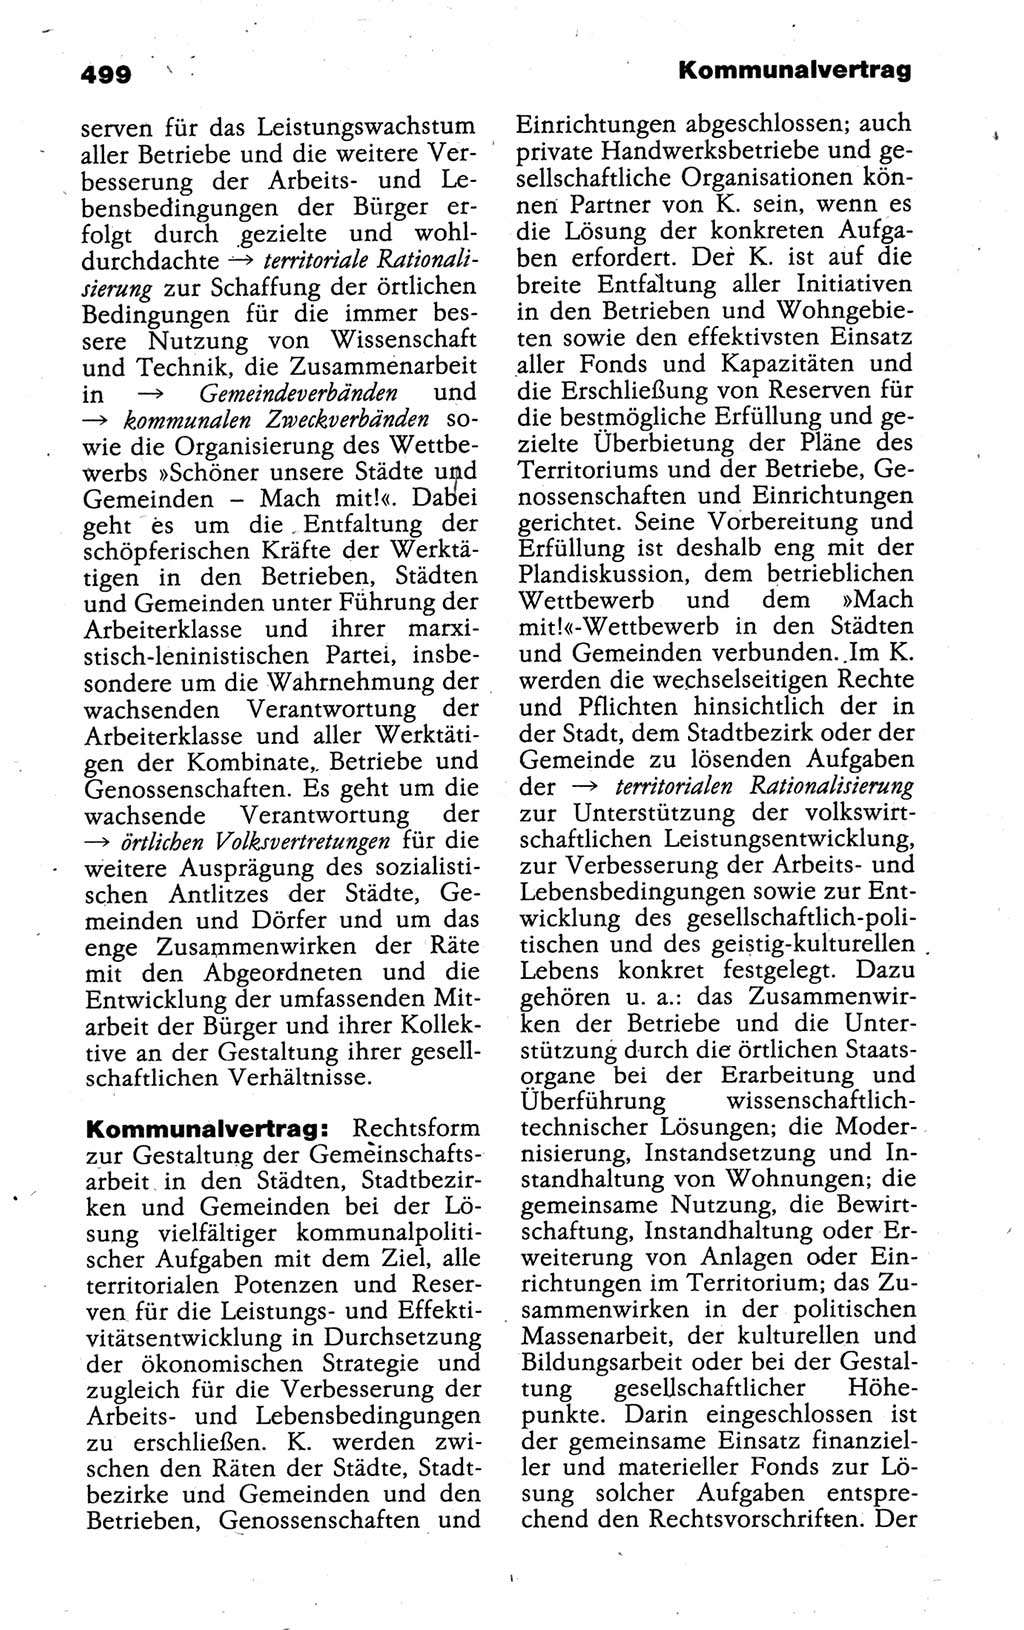 Kleines politisches Wörterbuch [Deutsche Demokratische Republik (DDR)] 1988, Seite 499 (Kl. pol. Wb. DDR 1988, S. 499)